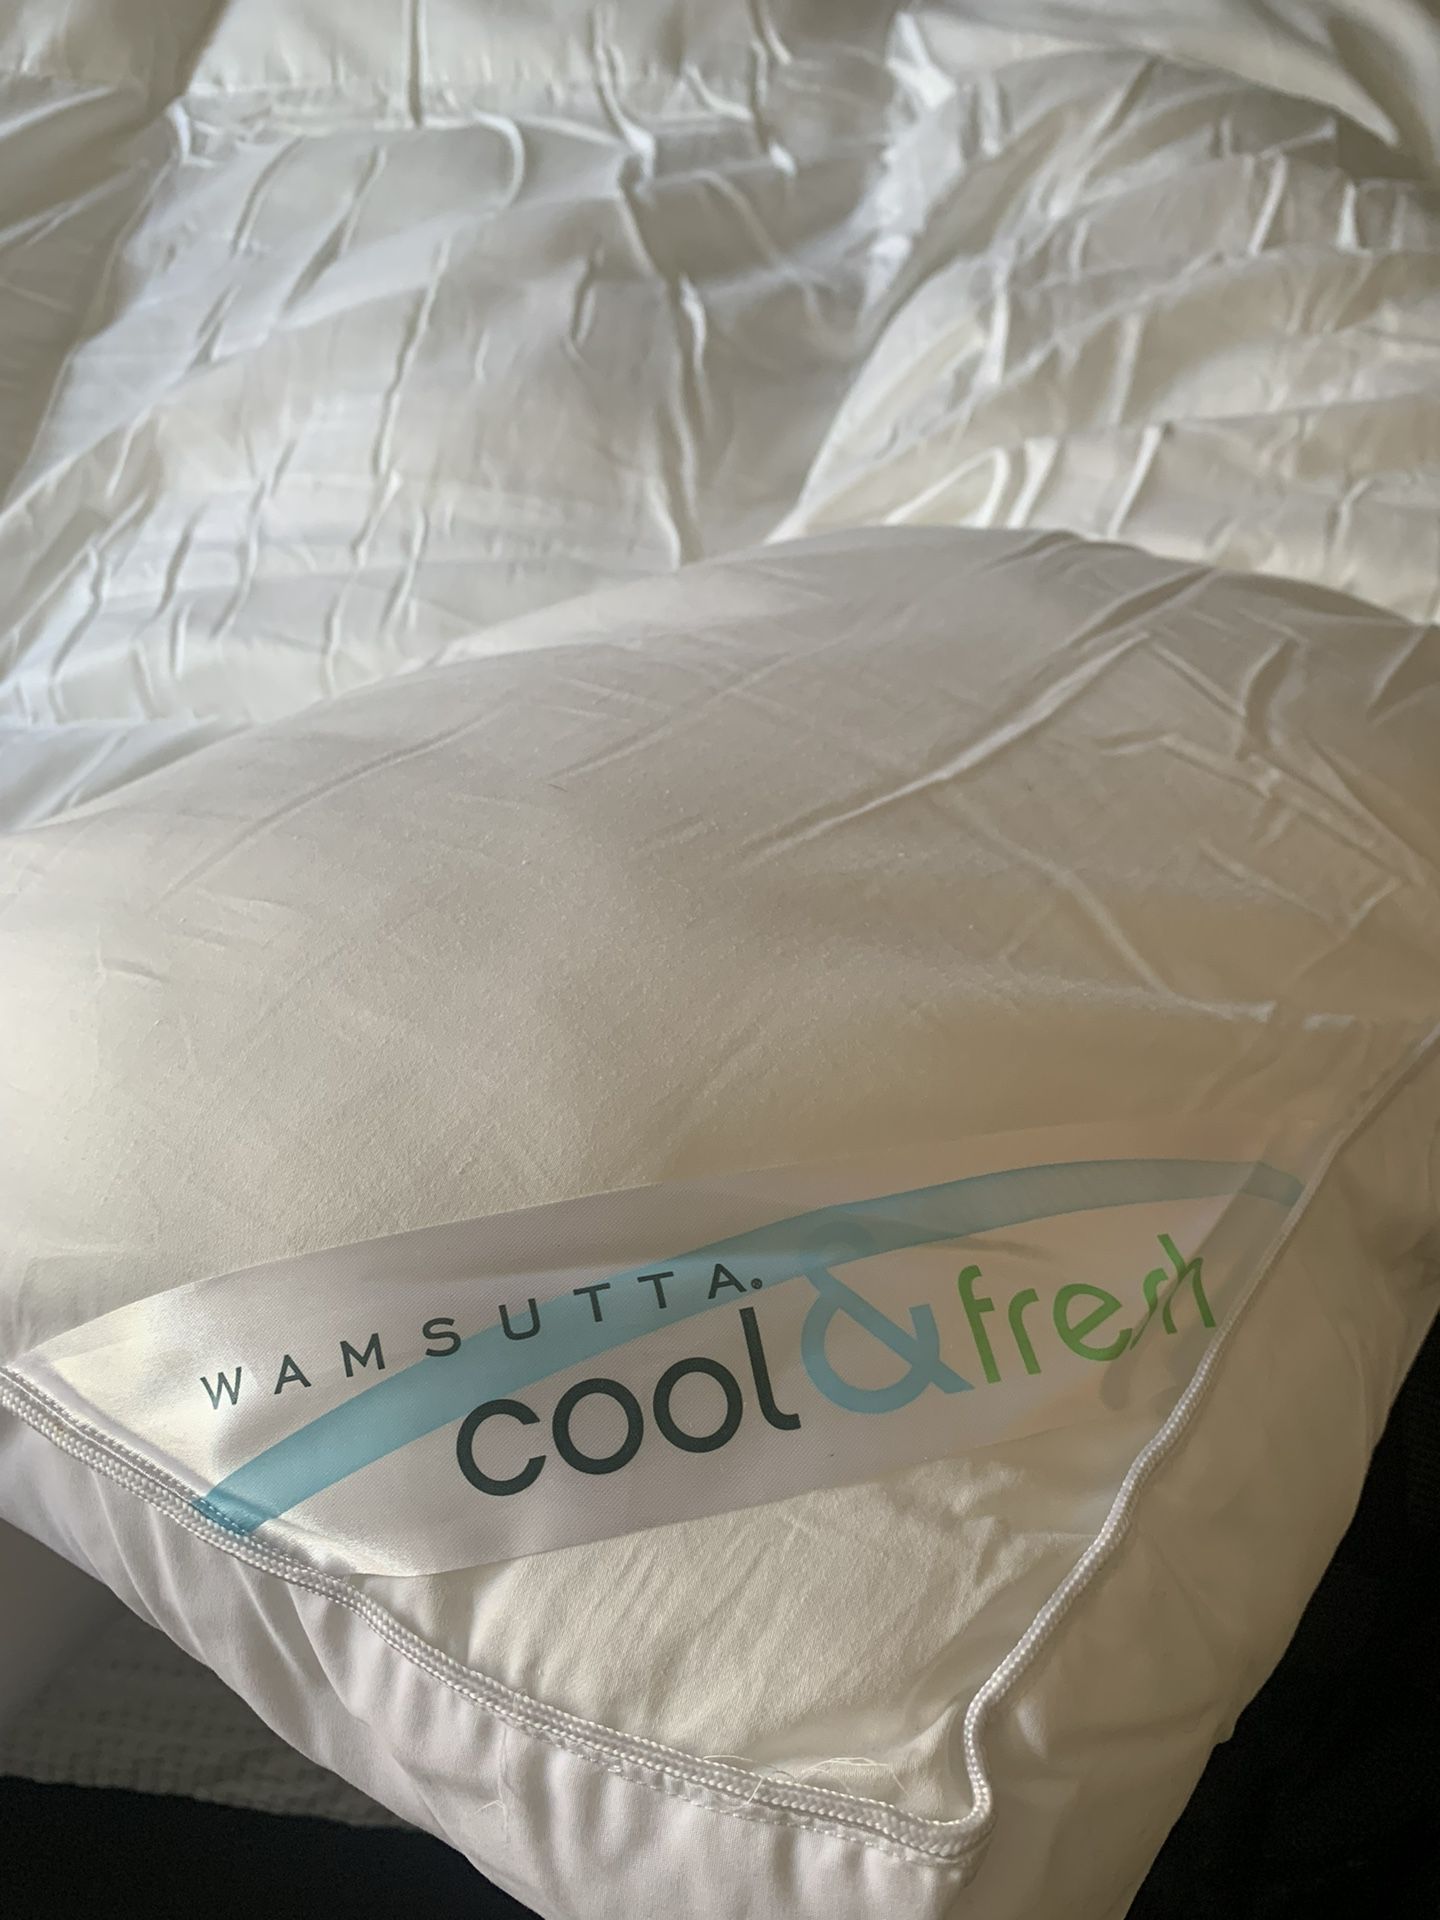 Wamsutta “Cool and Fresh “ Queen Comforter Blanket